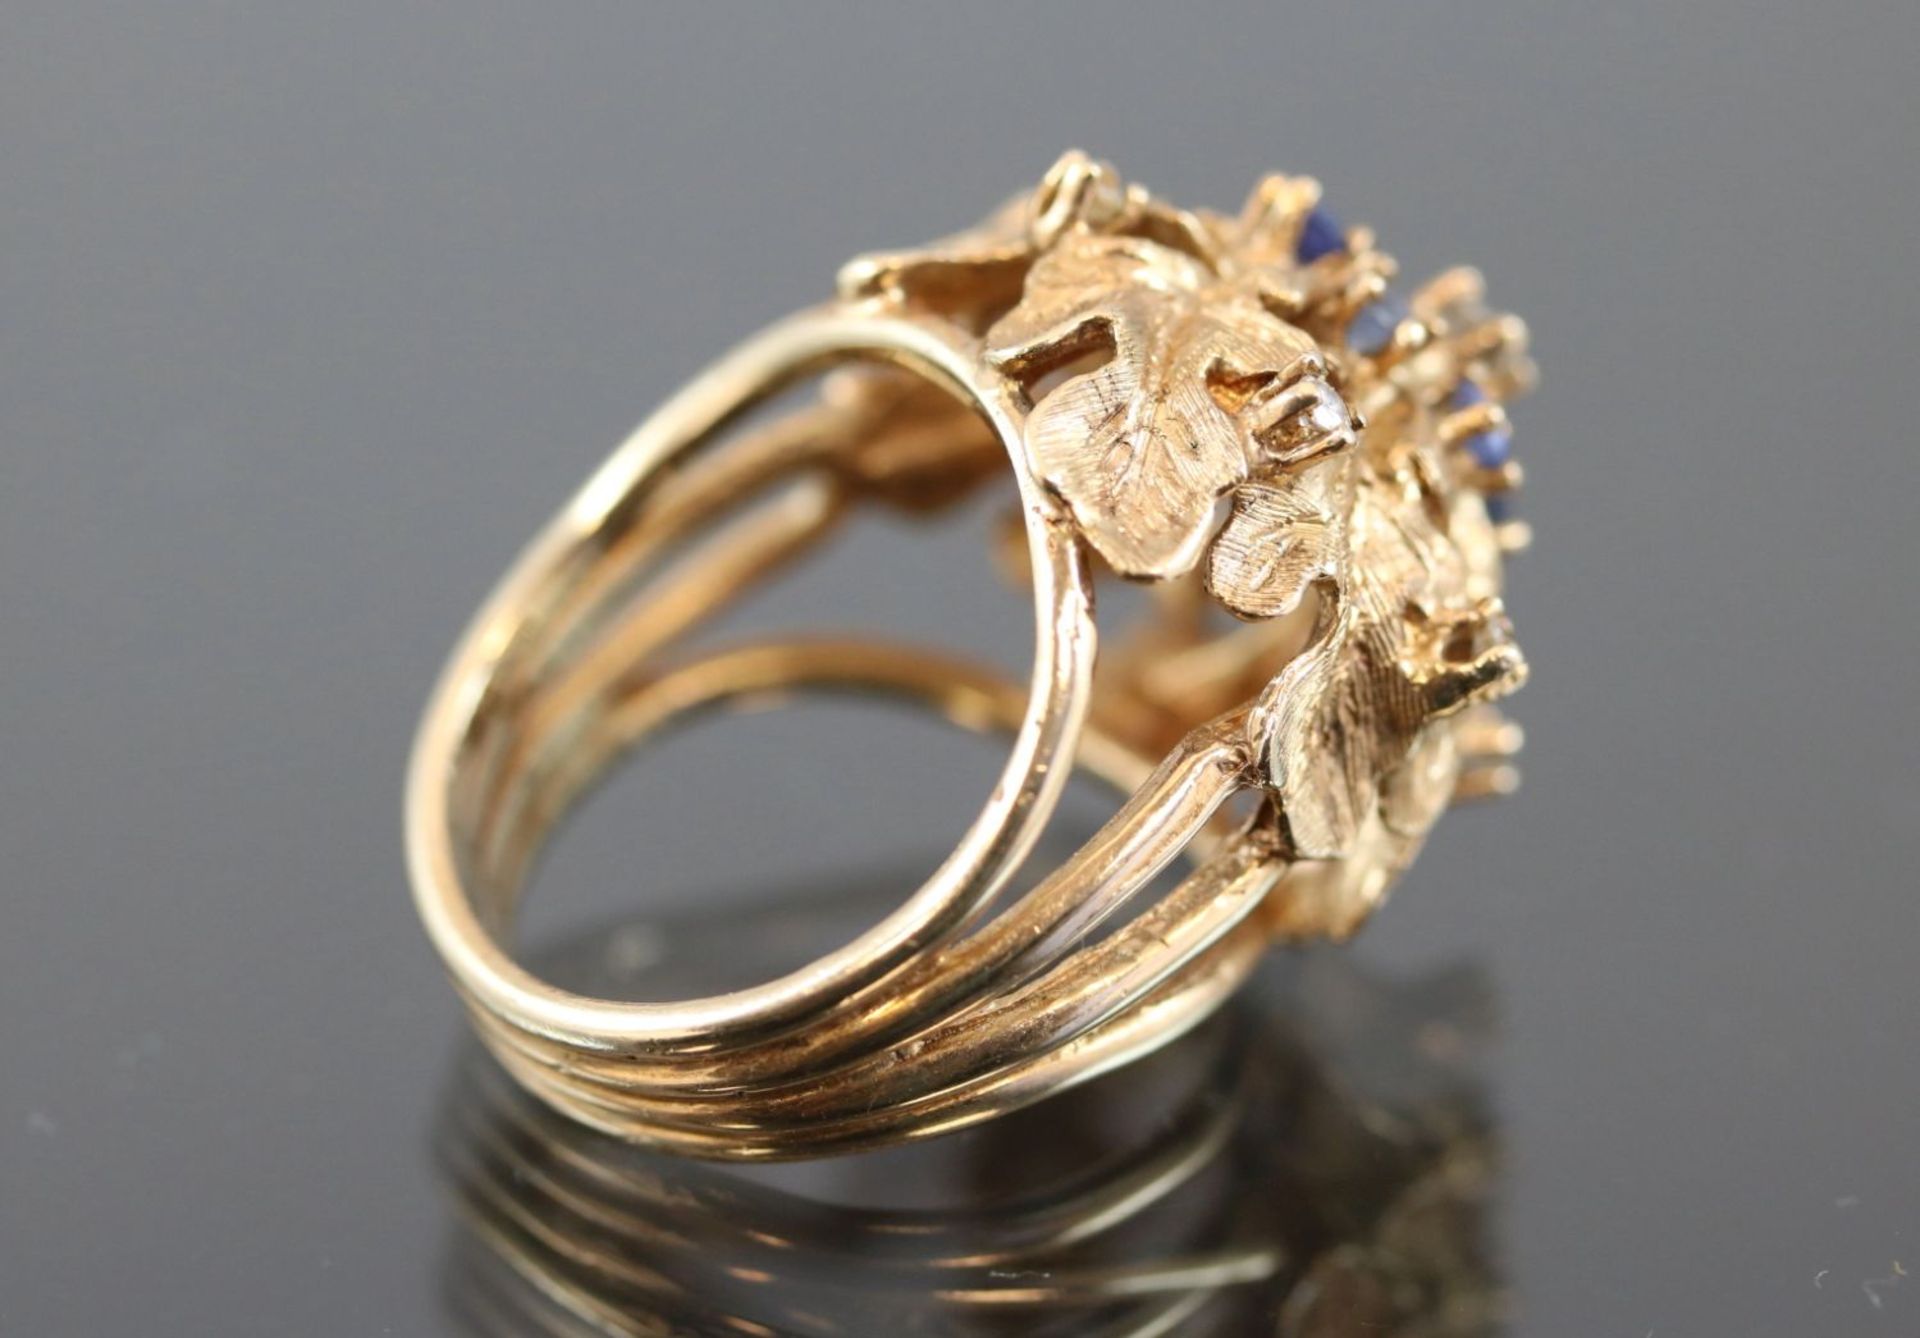 Saphir-Diamant-Ring, 585 Gelbgold10,9 Gramm 7 Diamanten, ca. 0,20 ct., w/si. Ringgröße: - Bild 5 aus 7